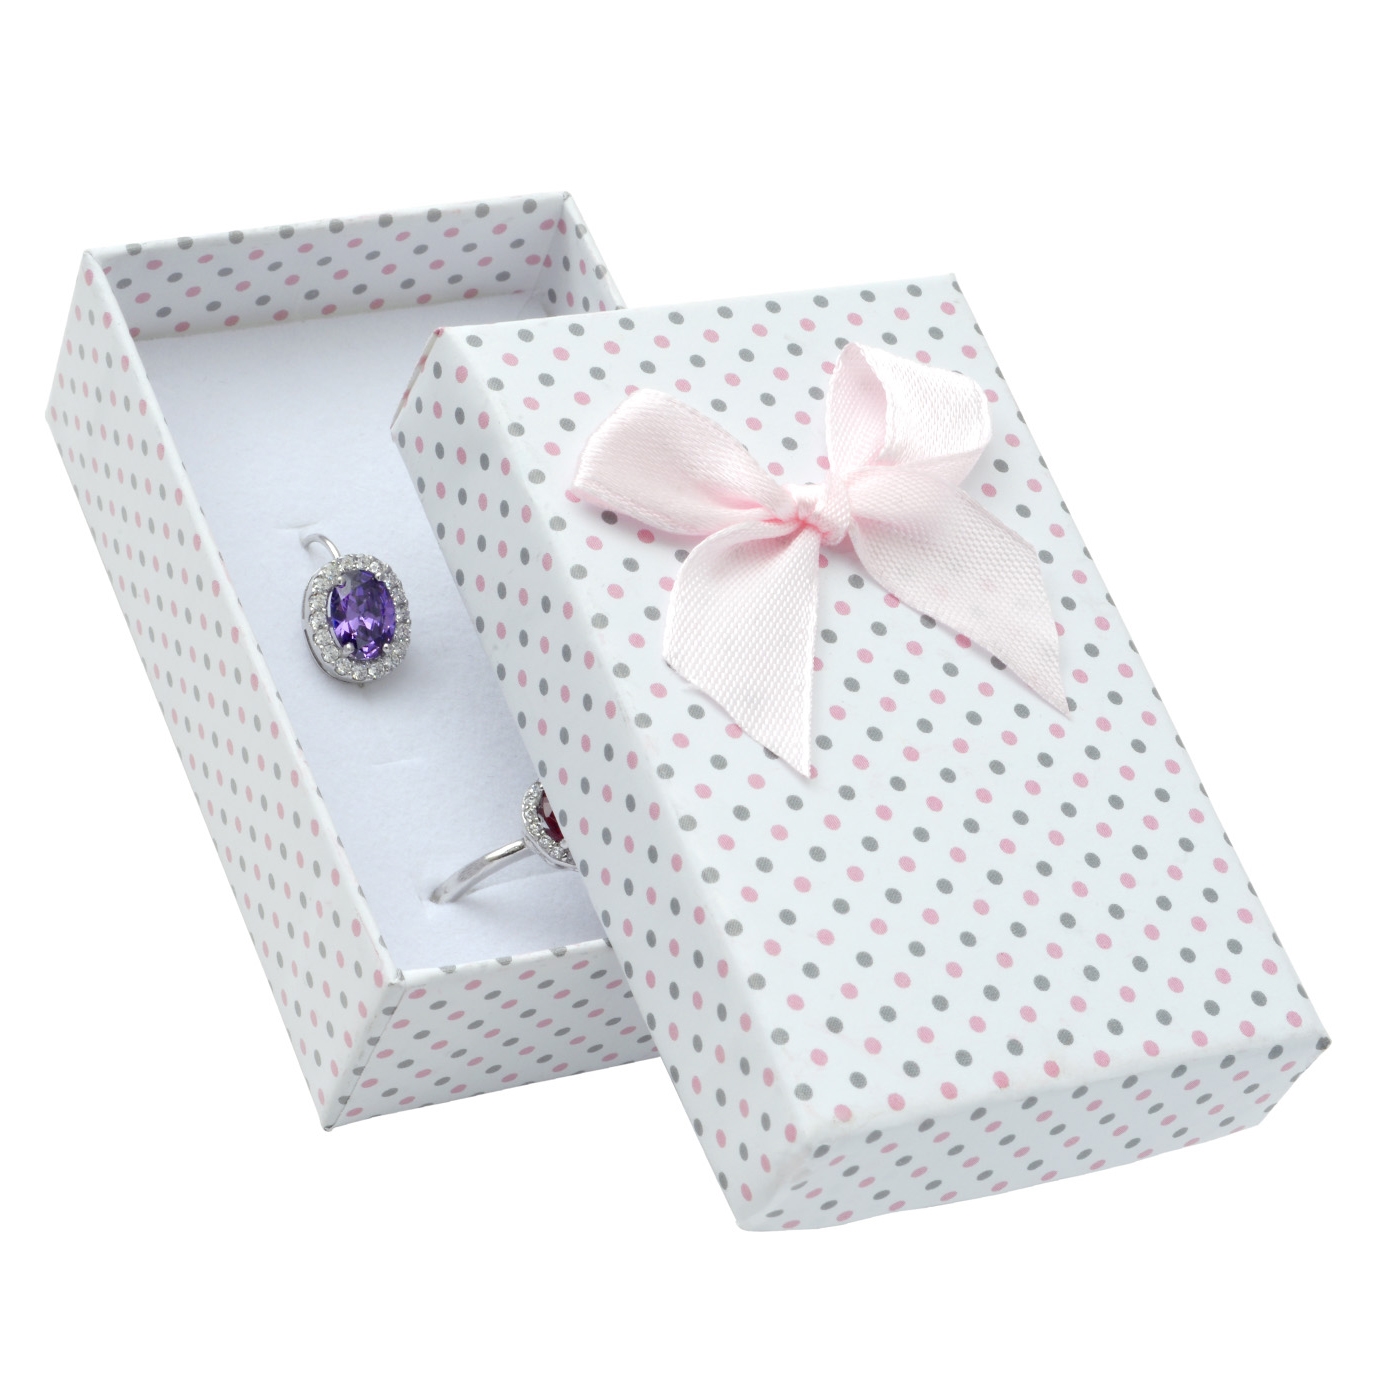 Škatuľka na súpravu šperkov biela, šedé a ružové bodky